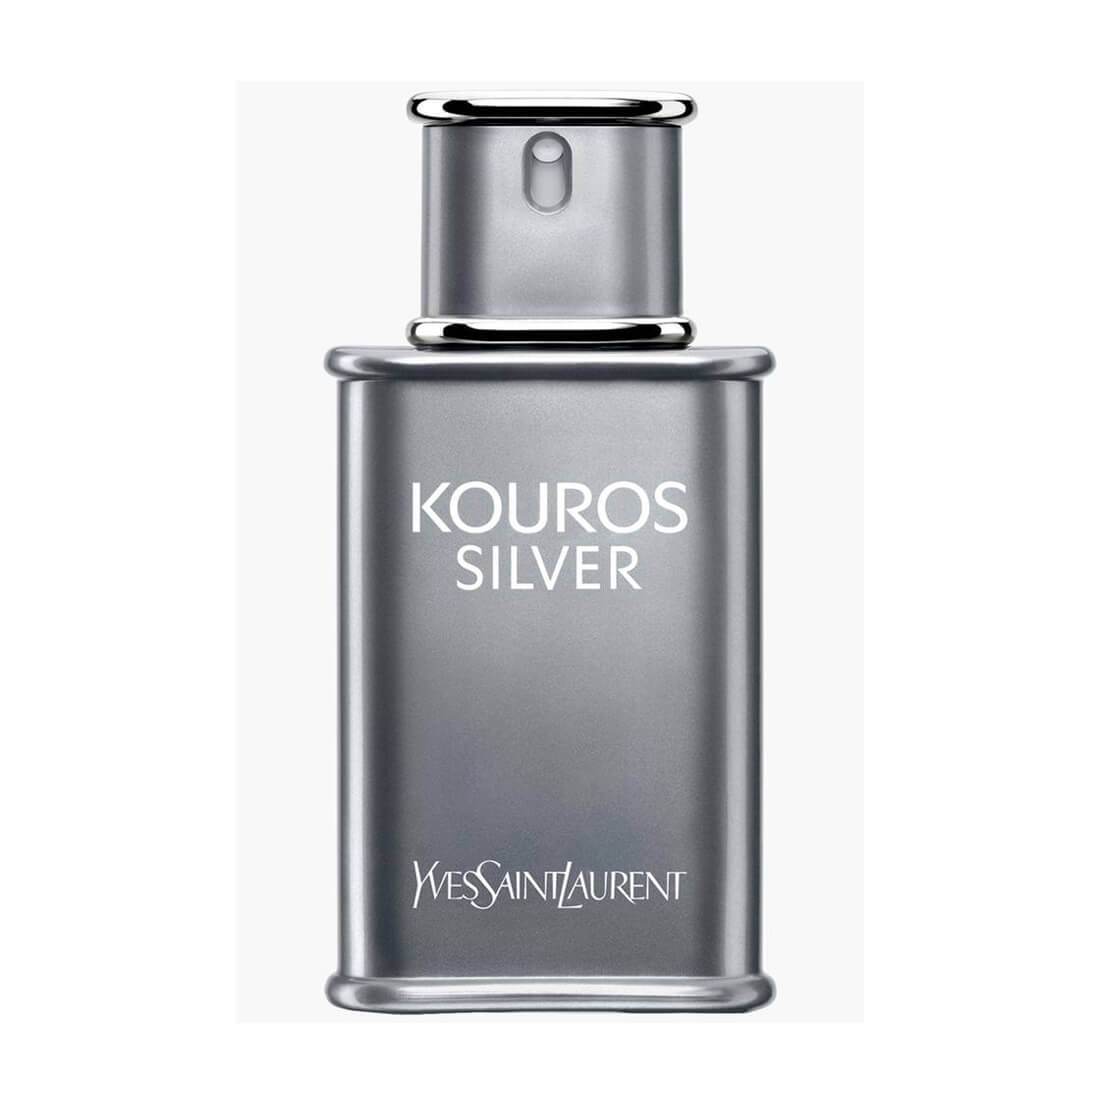 Yves Saint Laurent Kouros Silver EDT Perfume For Men - 100ml